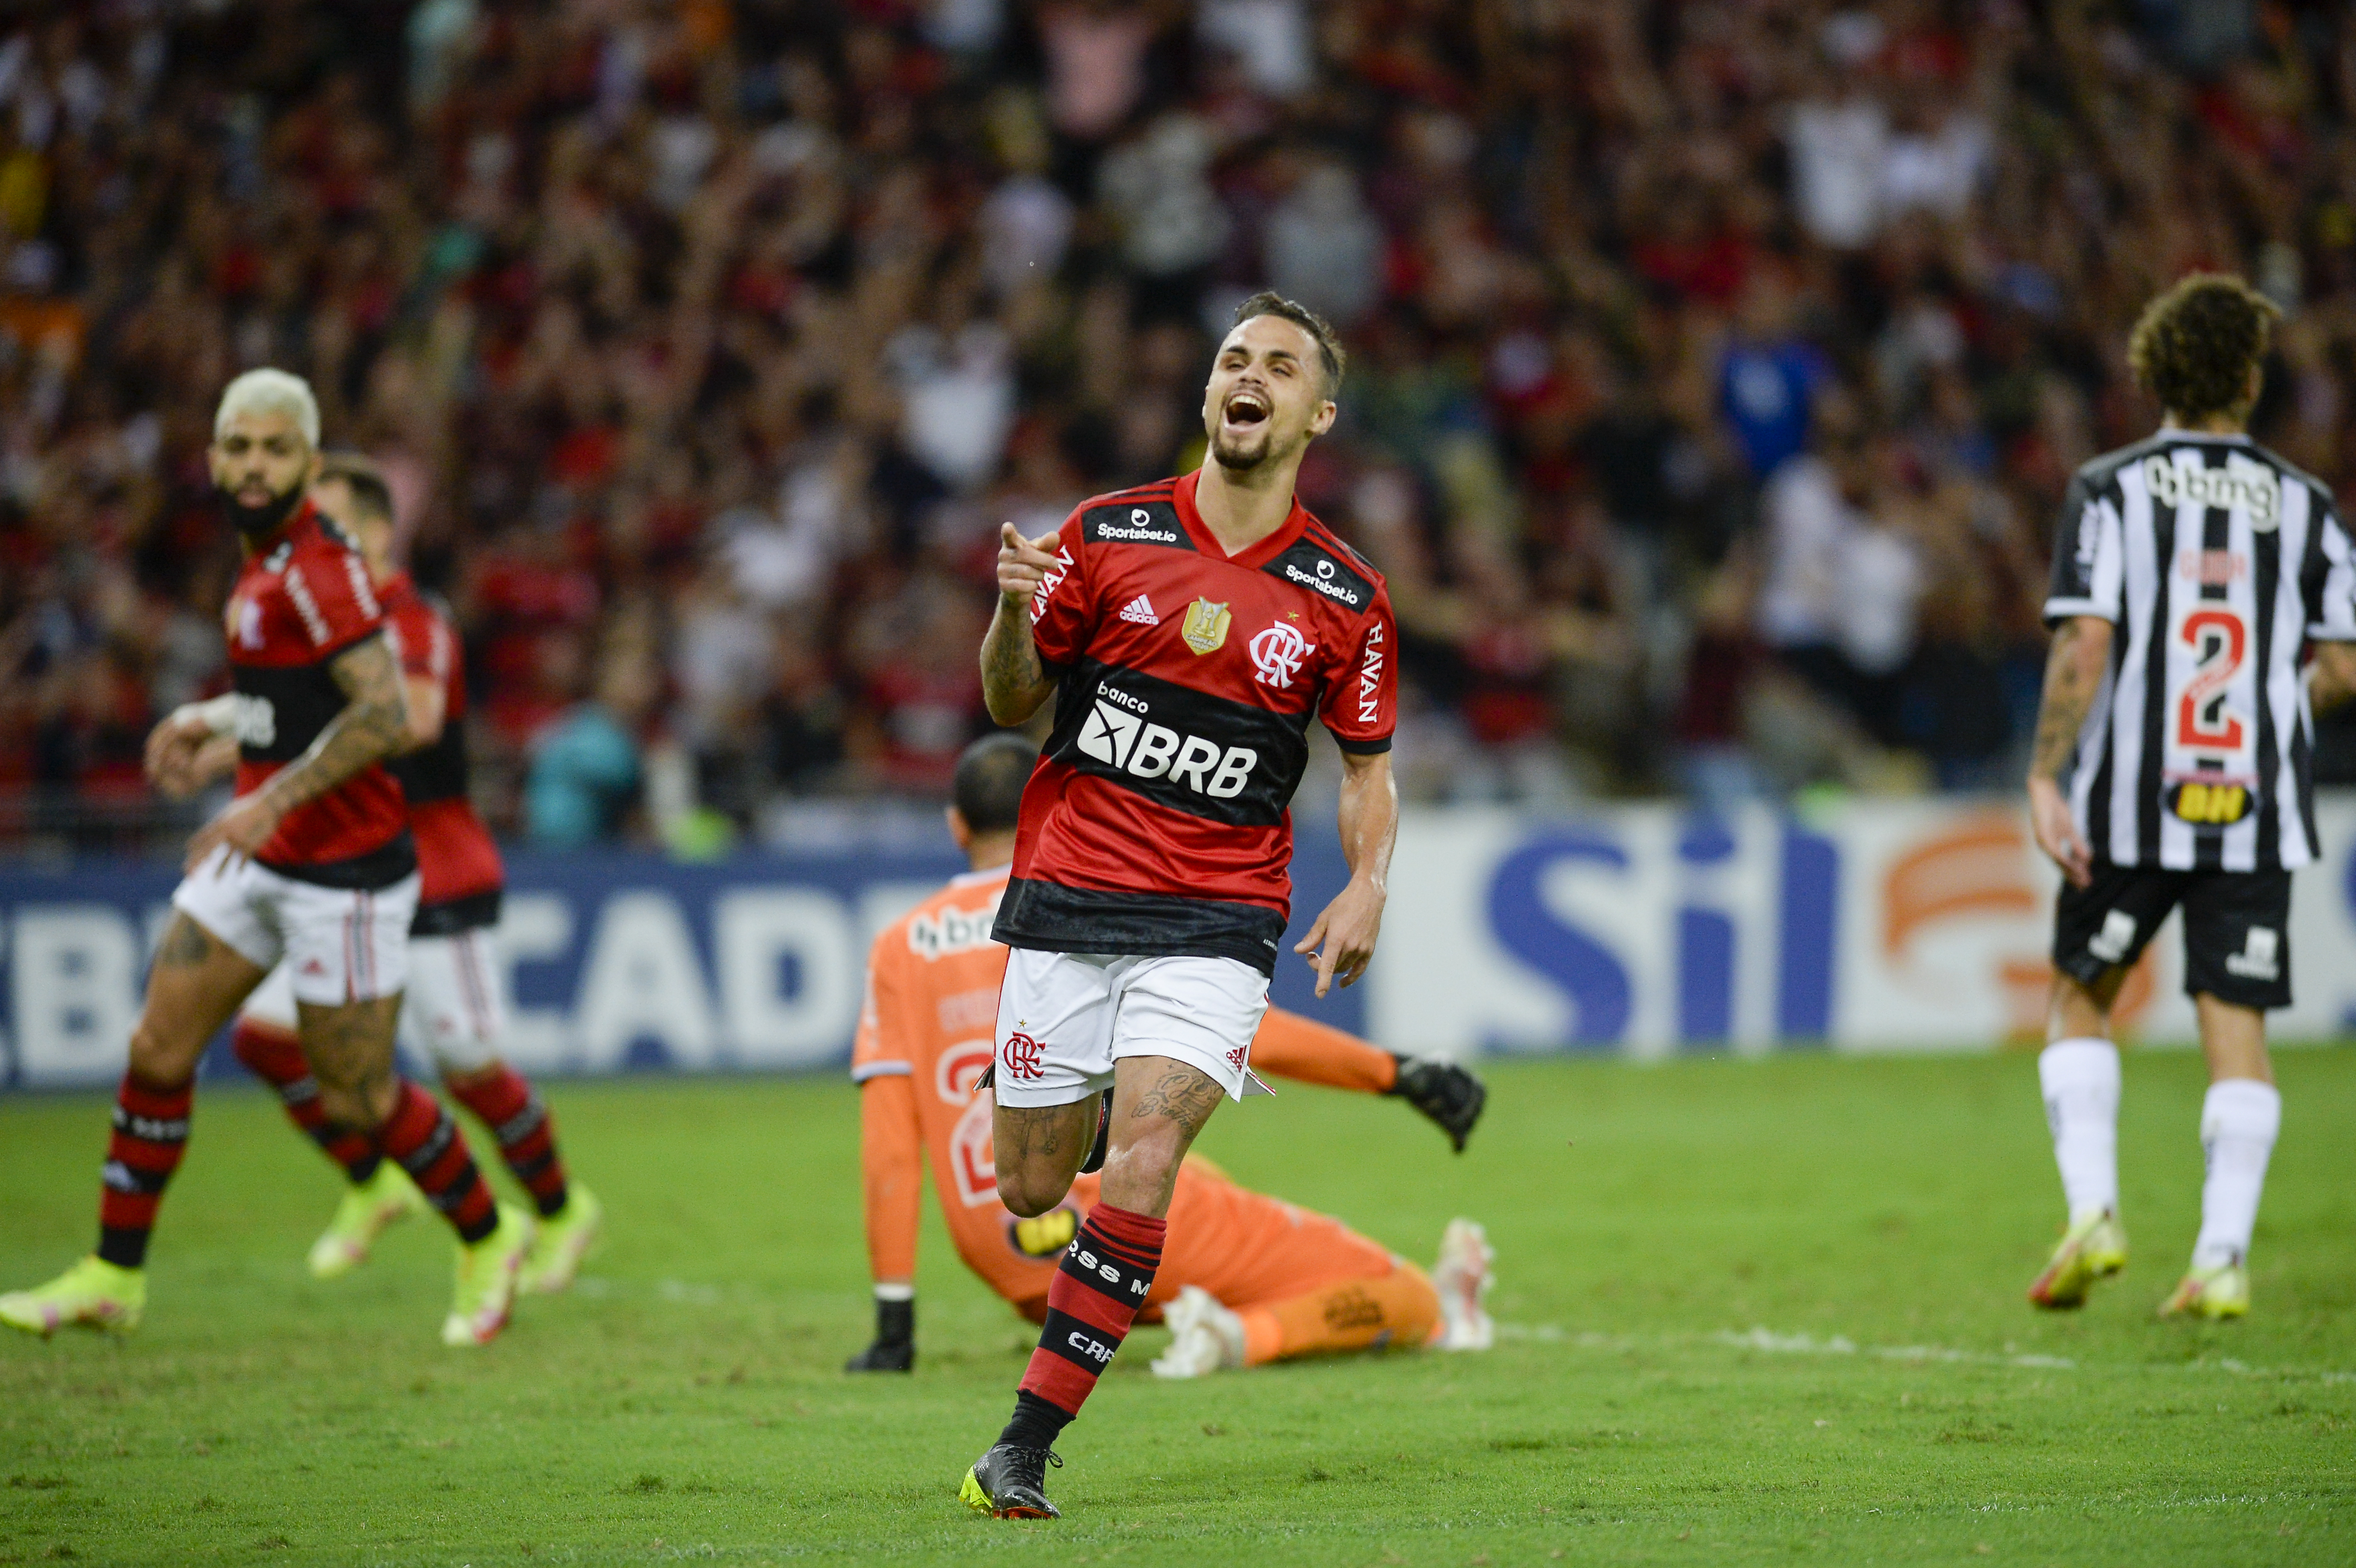 SAIU AGORA (07/08), está 100% confirmado: Michael, ex-Flamengo